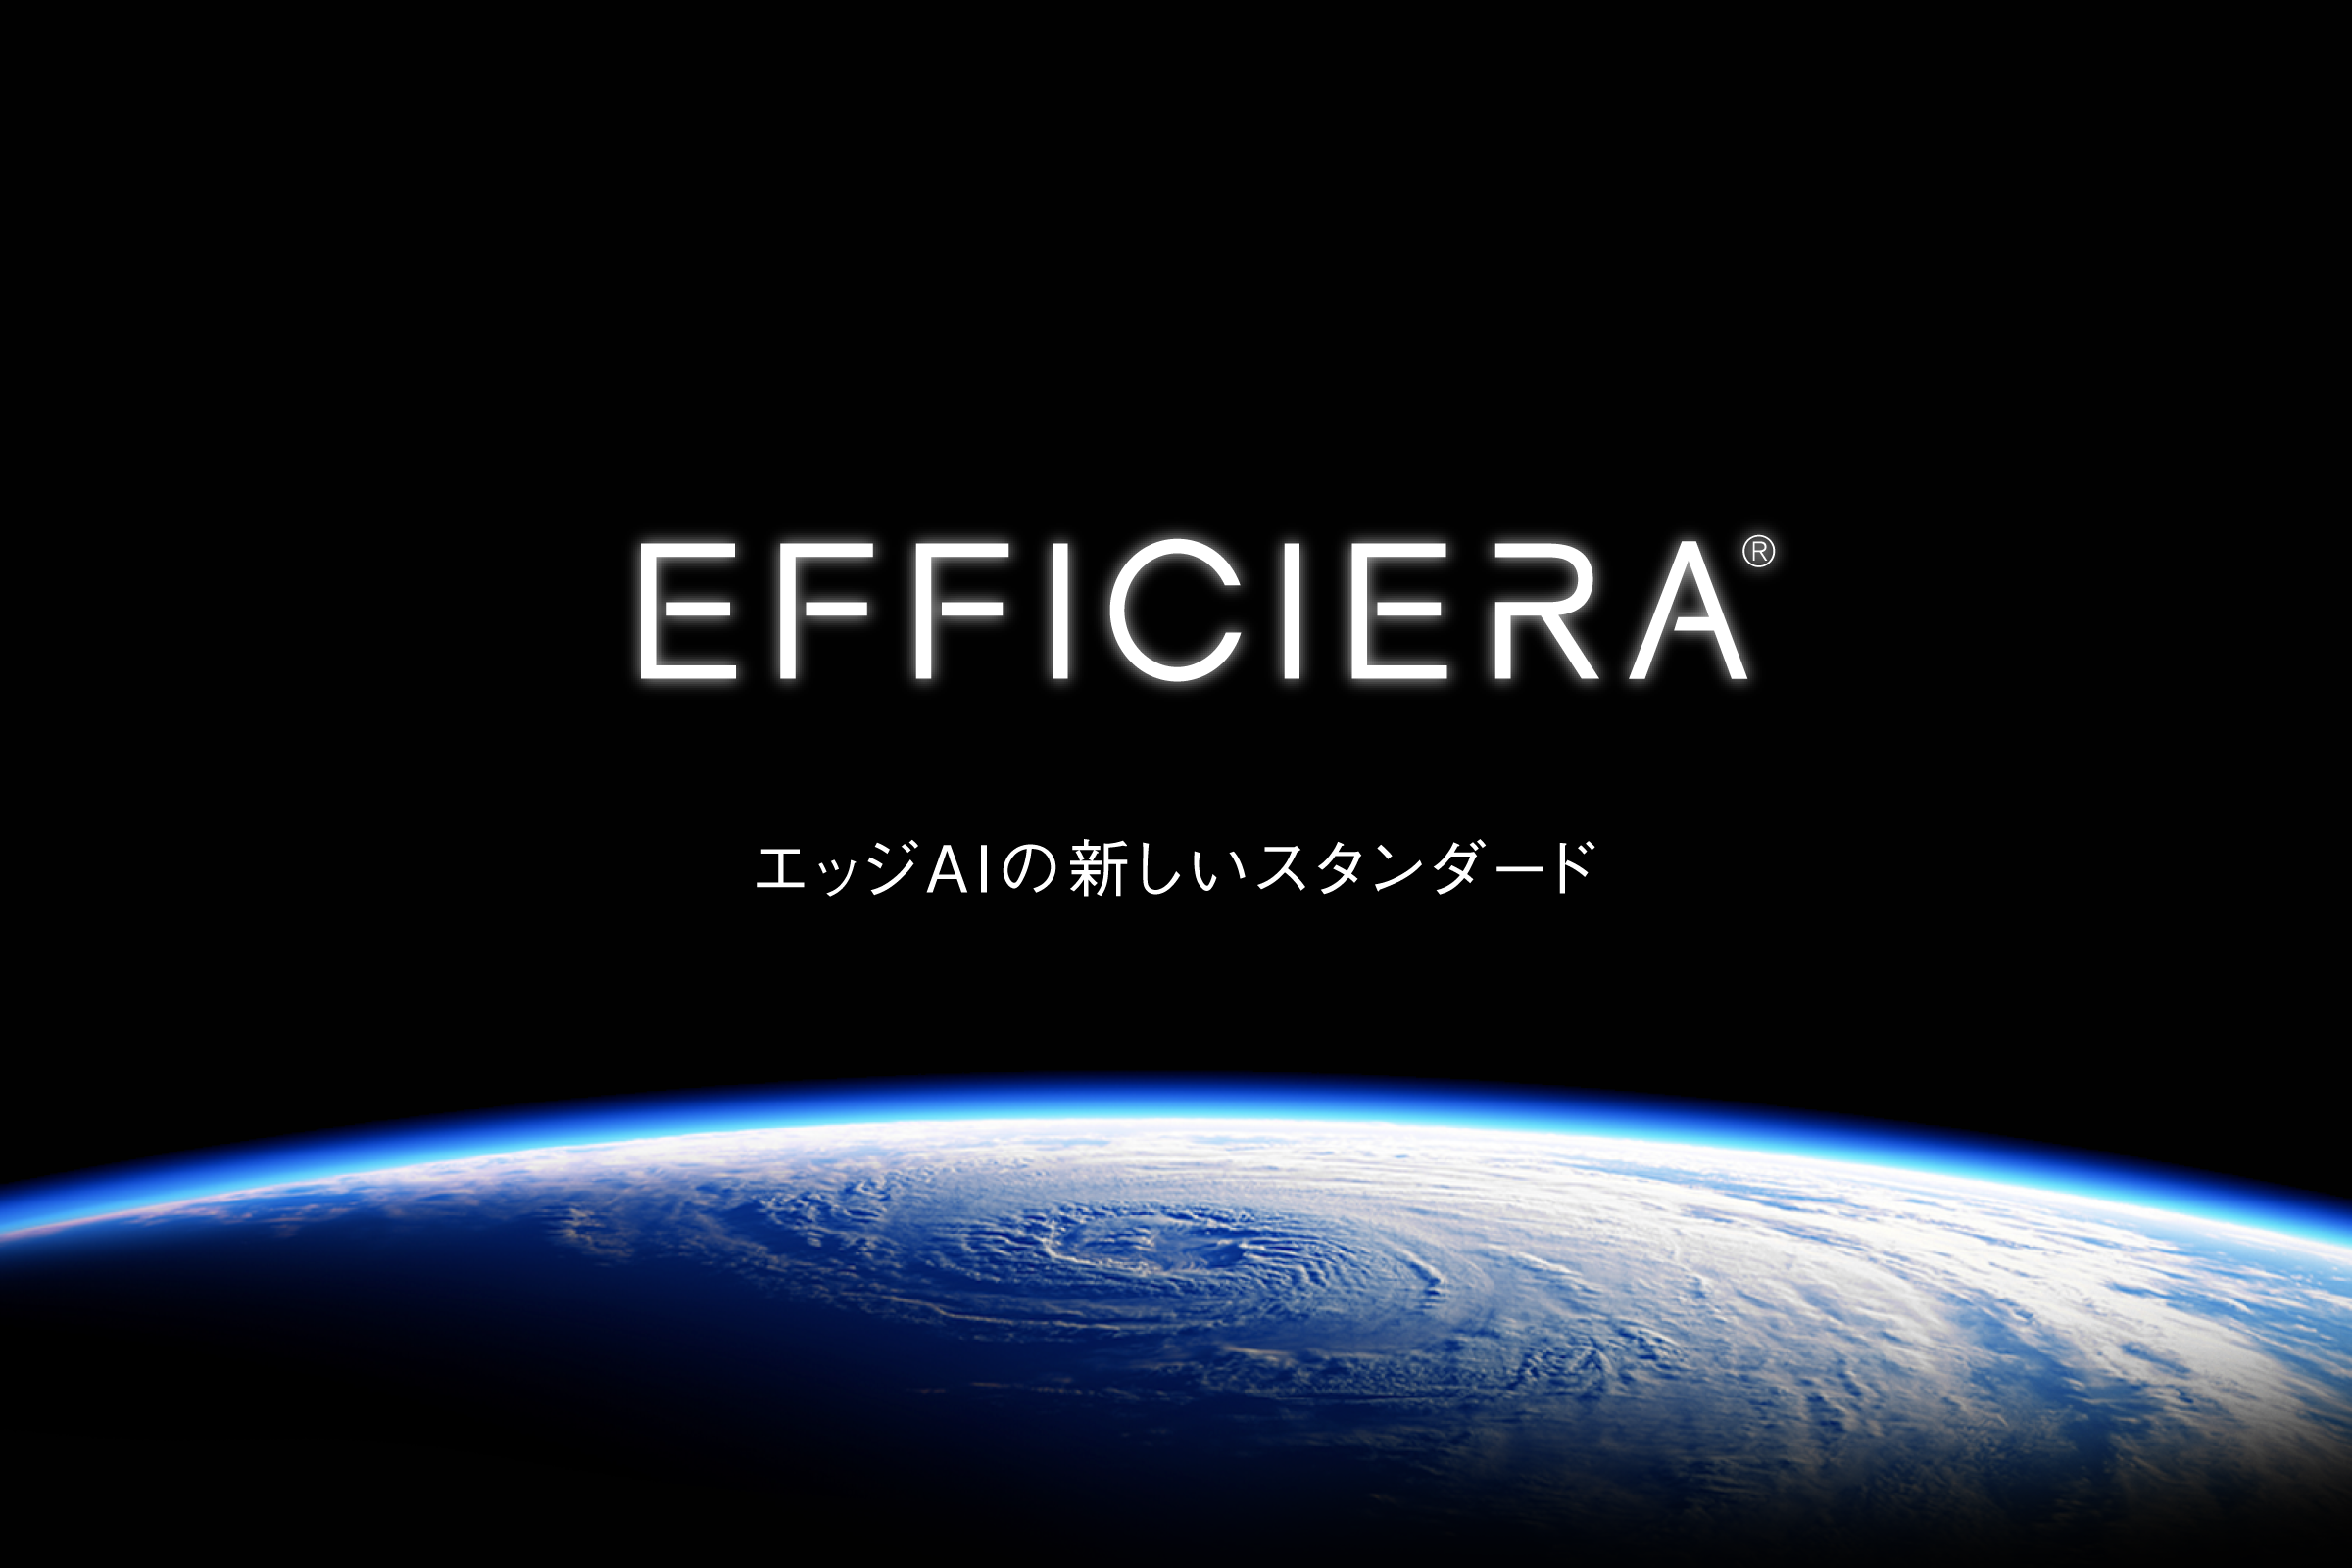 【プレスリリース】超低消費電力AIアクセラレータIP「Efficiera」を 商用版として正式提供開始